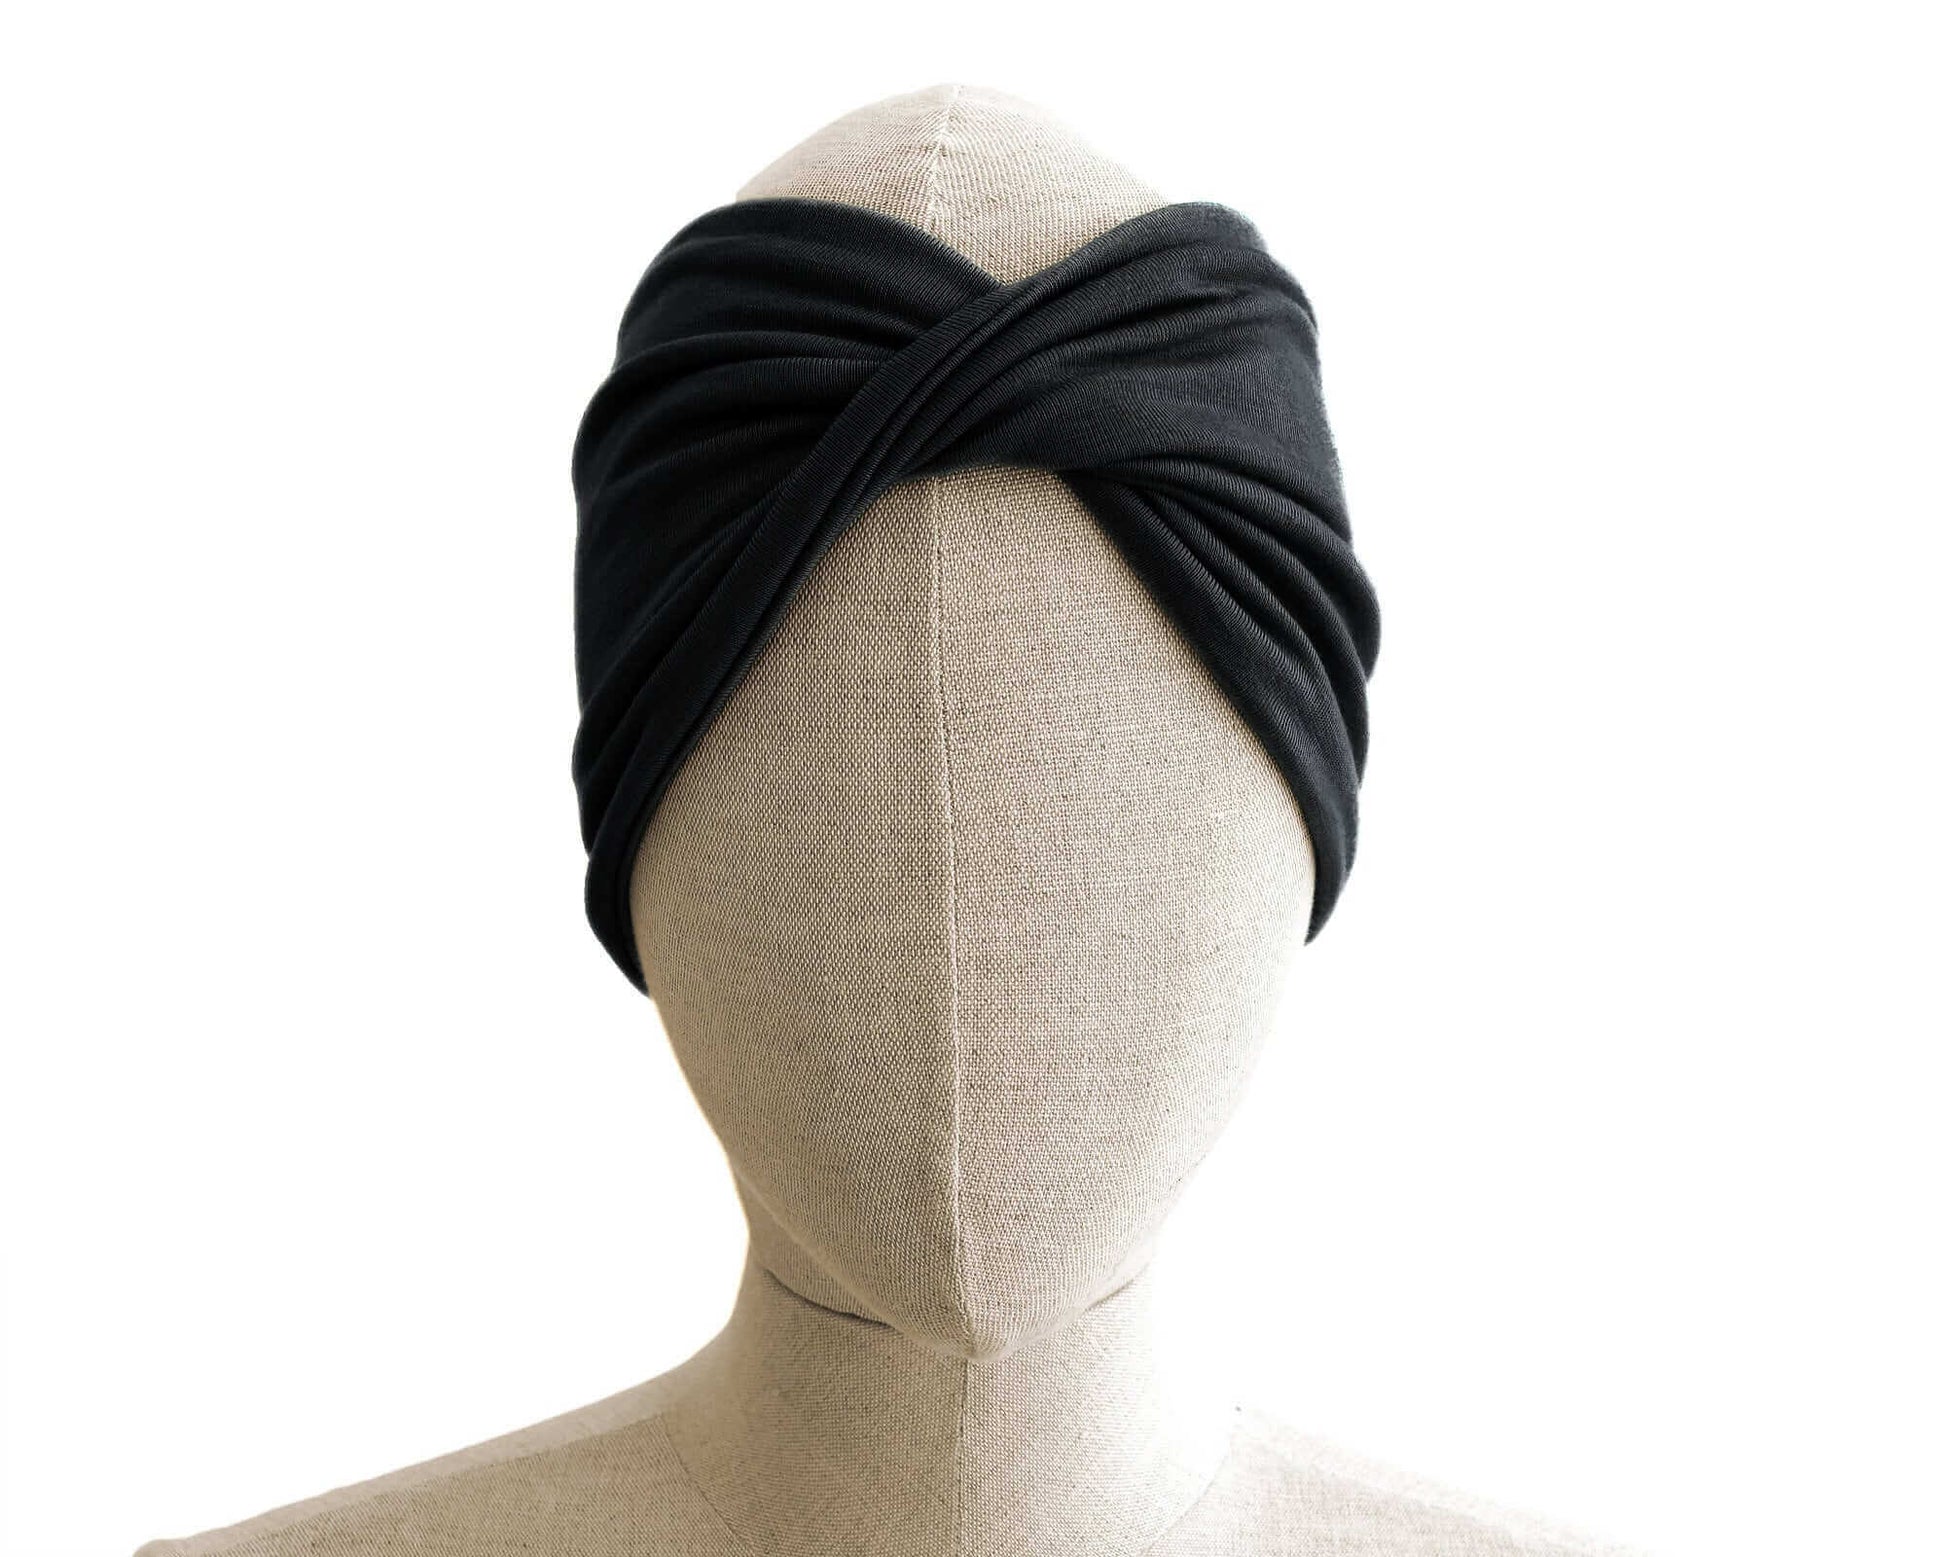 Black, Twist Stretch Headband, 95% Viscose Material (wood pulp)